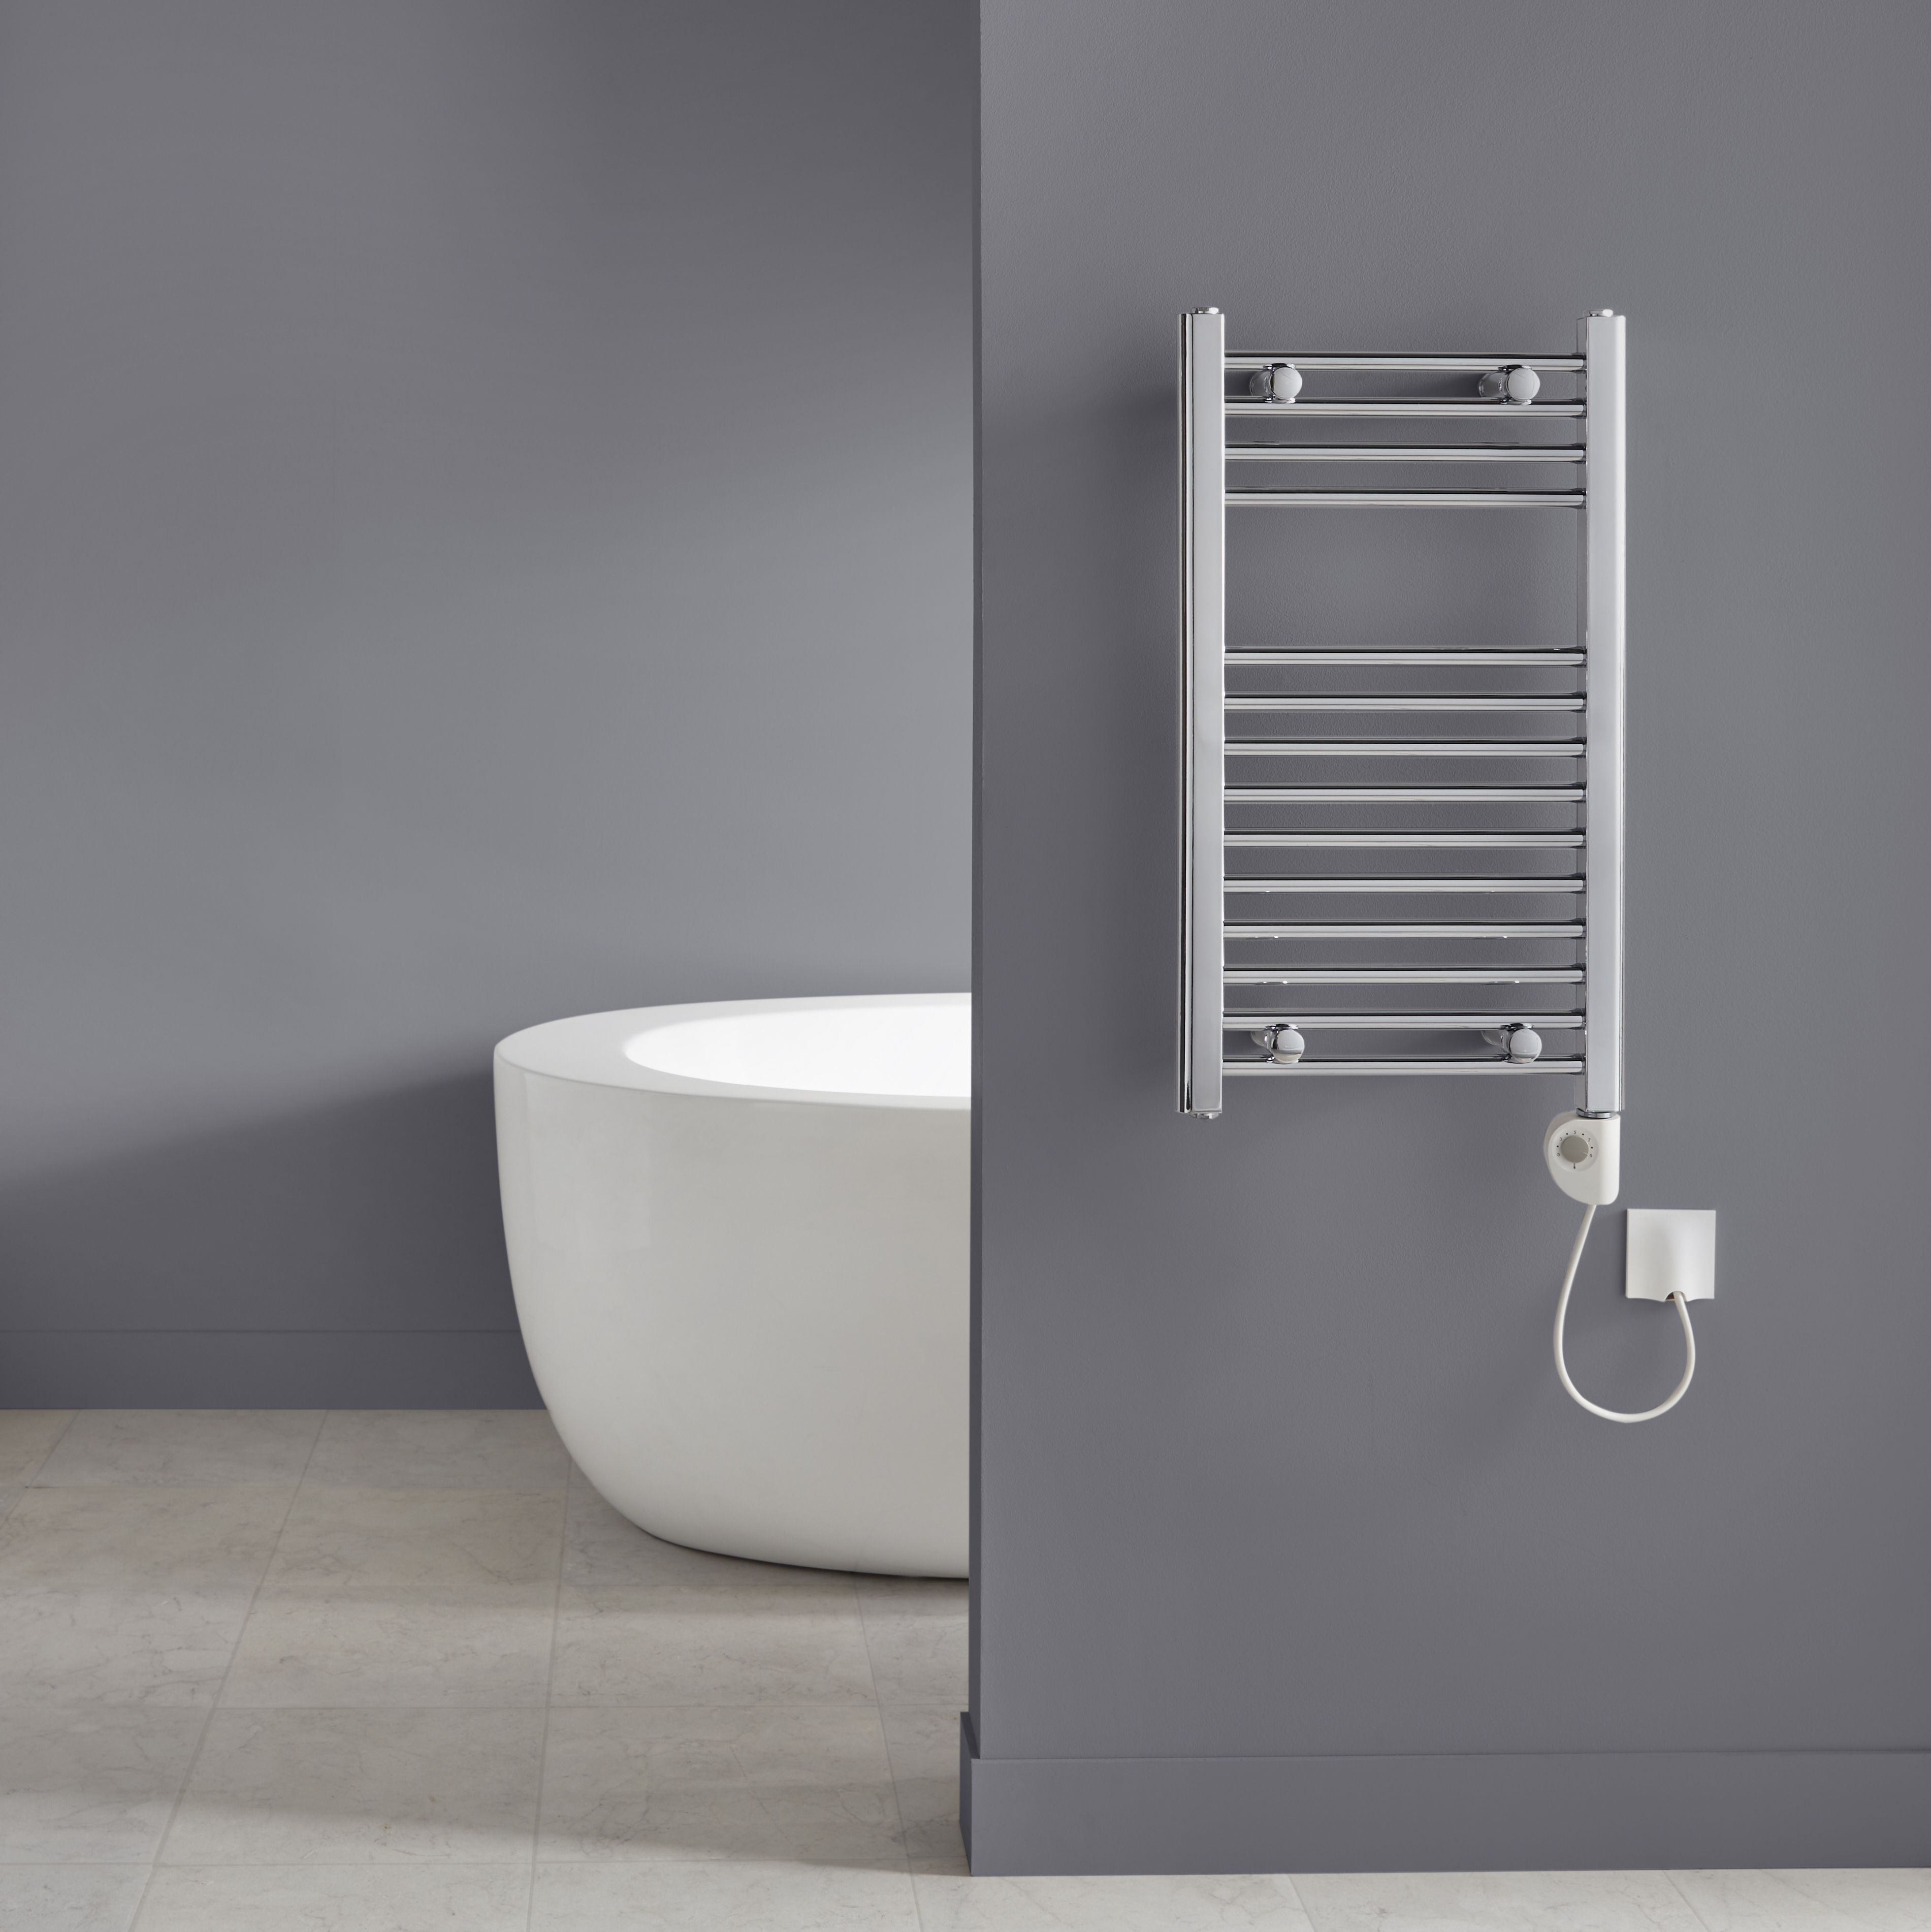 Flomasta Silver Chrome effect Flat Towel warmer (W)400mm x (H)700mm